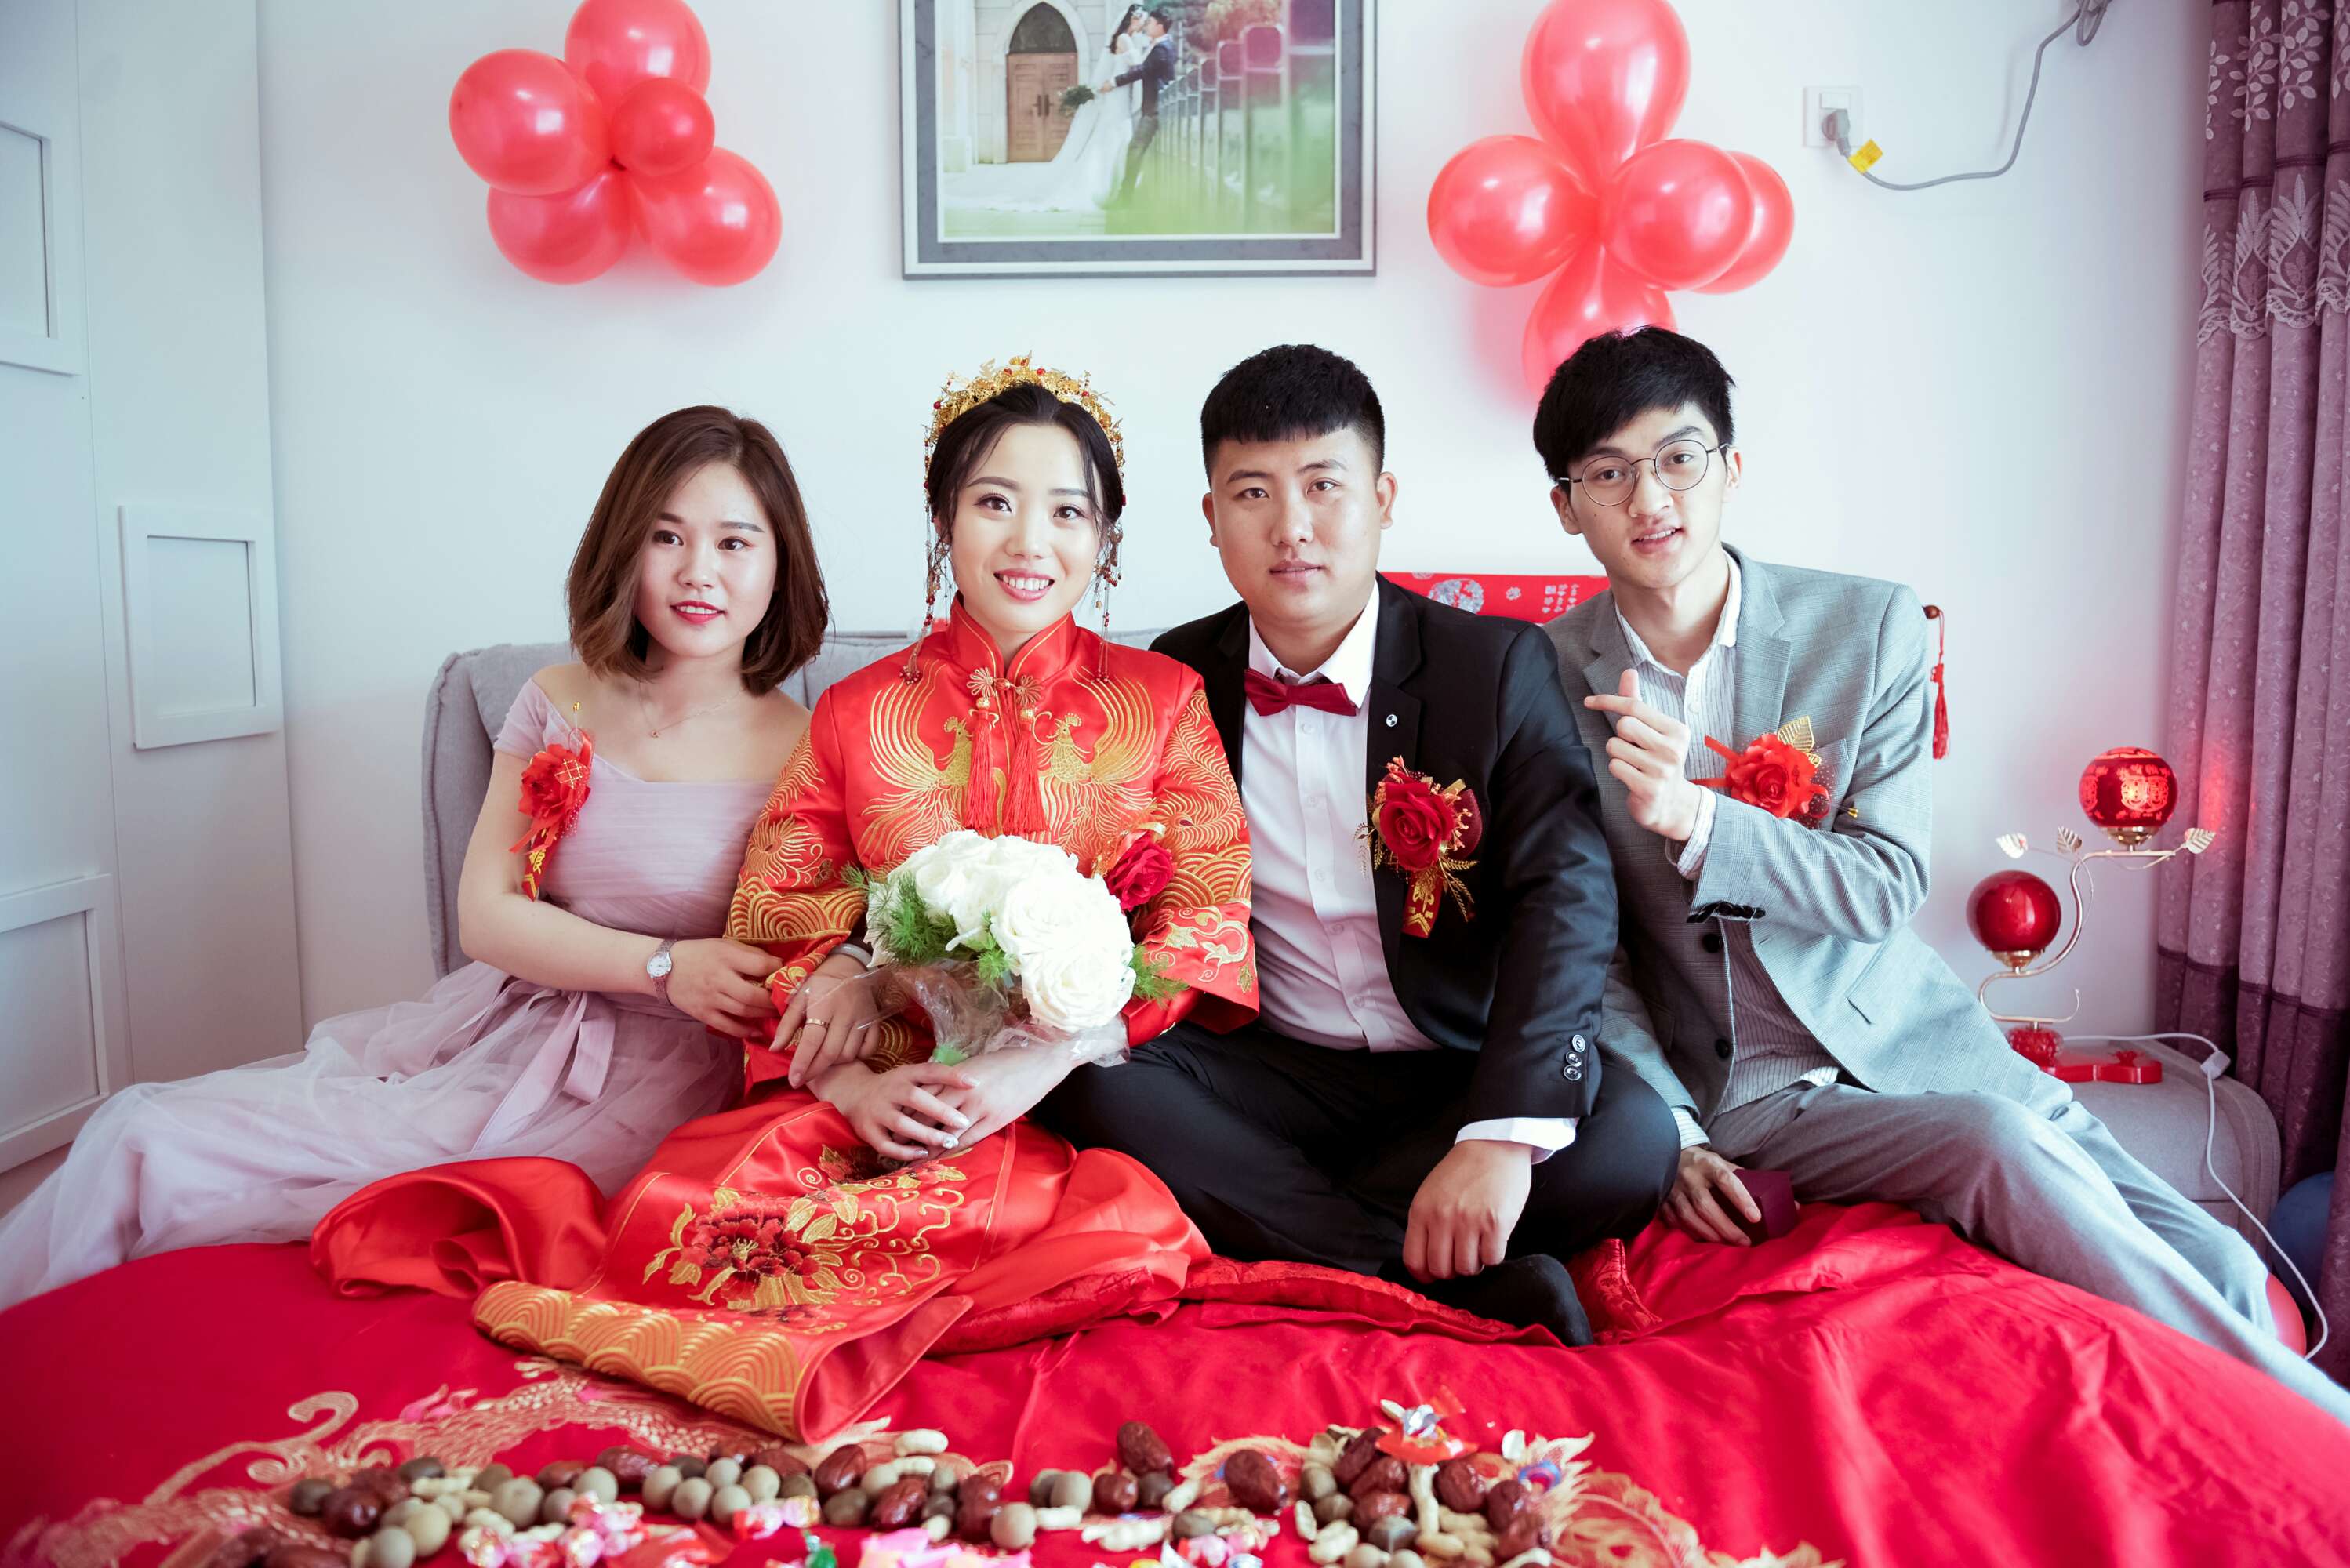 韩式水晶婚礼 - 主题婚礼 - 婚礼图片 - 婚礼风尚